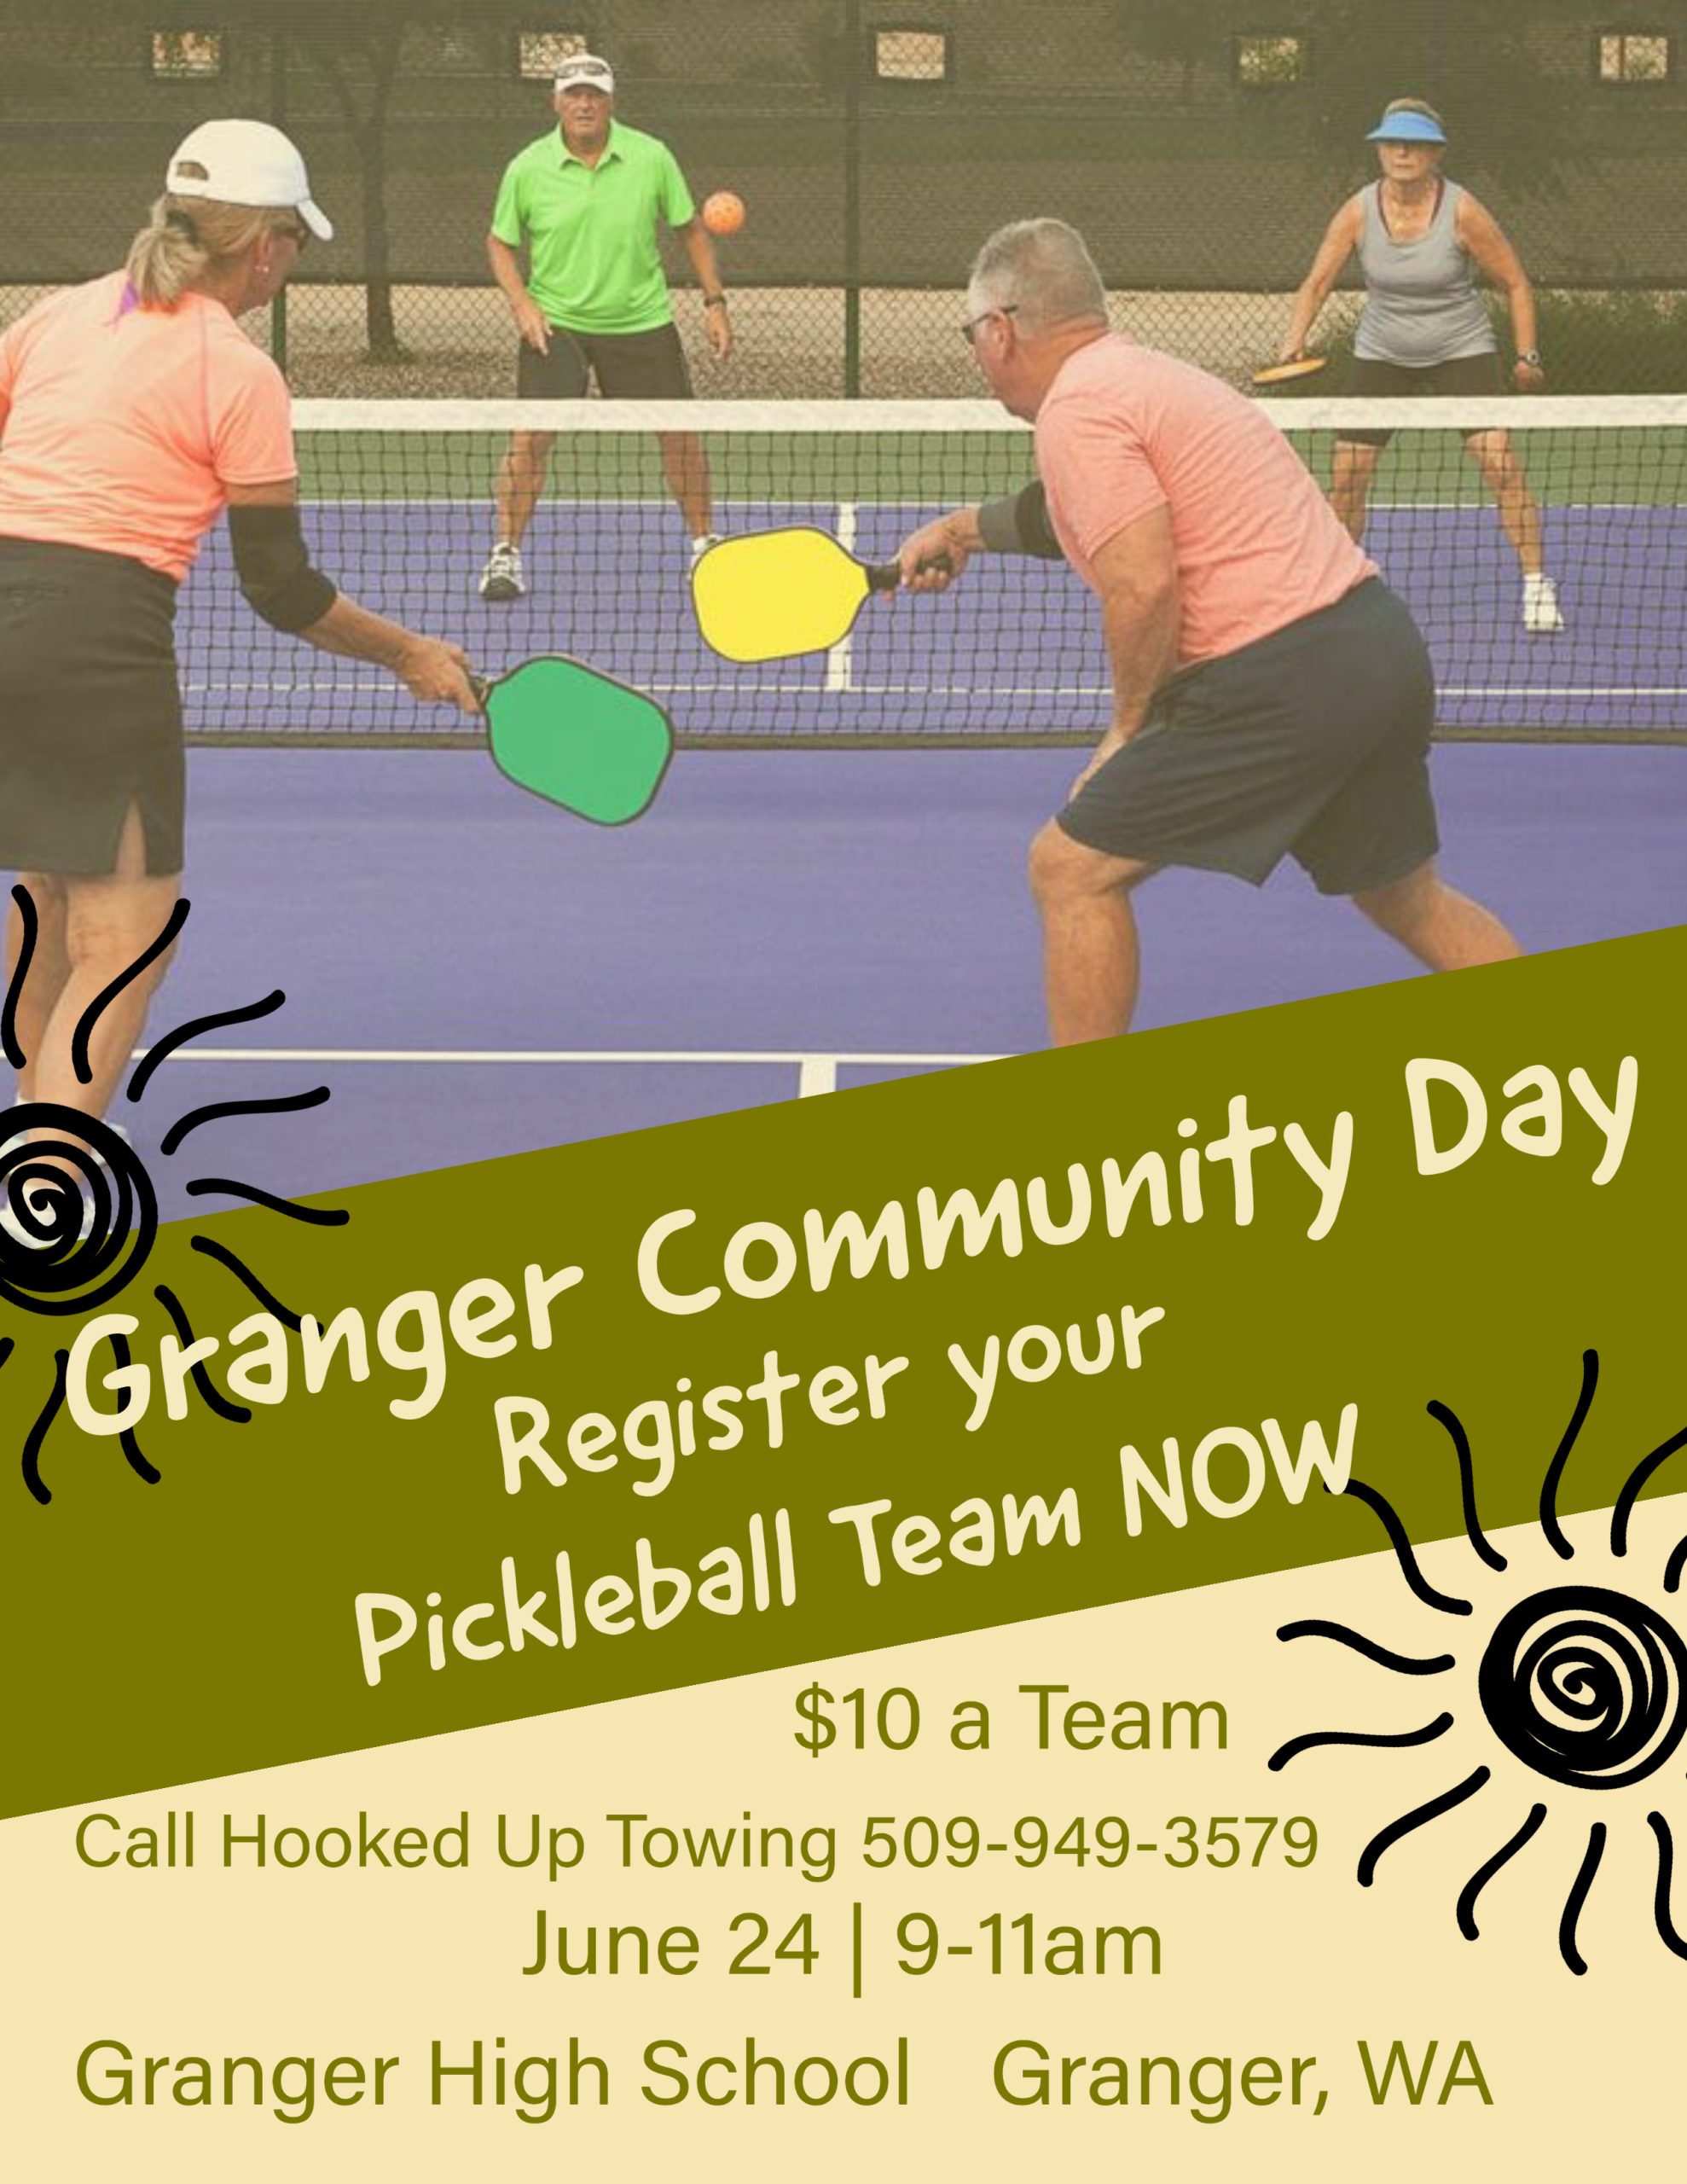 Granger Community Day Pickle Ball @ Granger High School